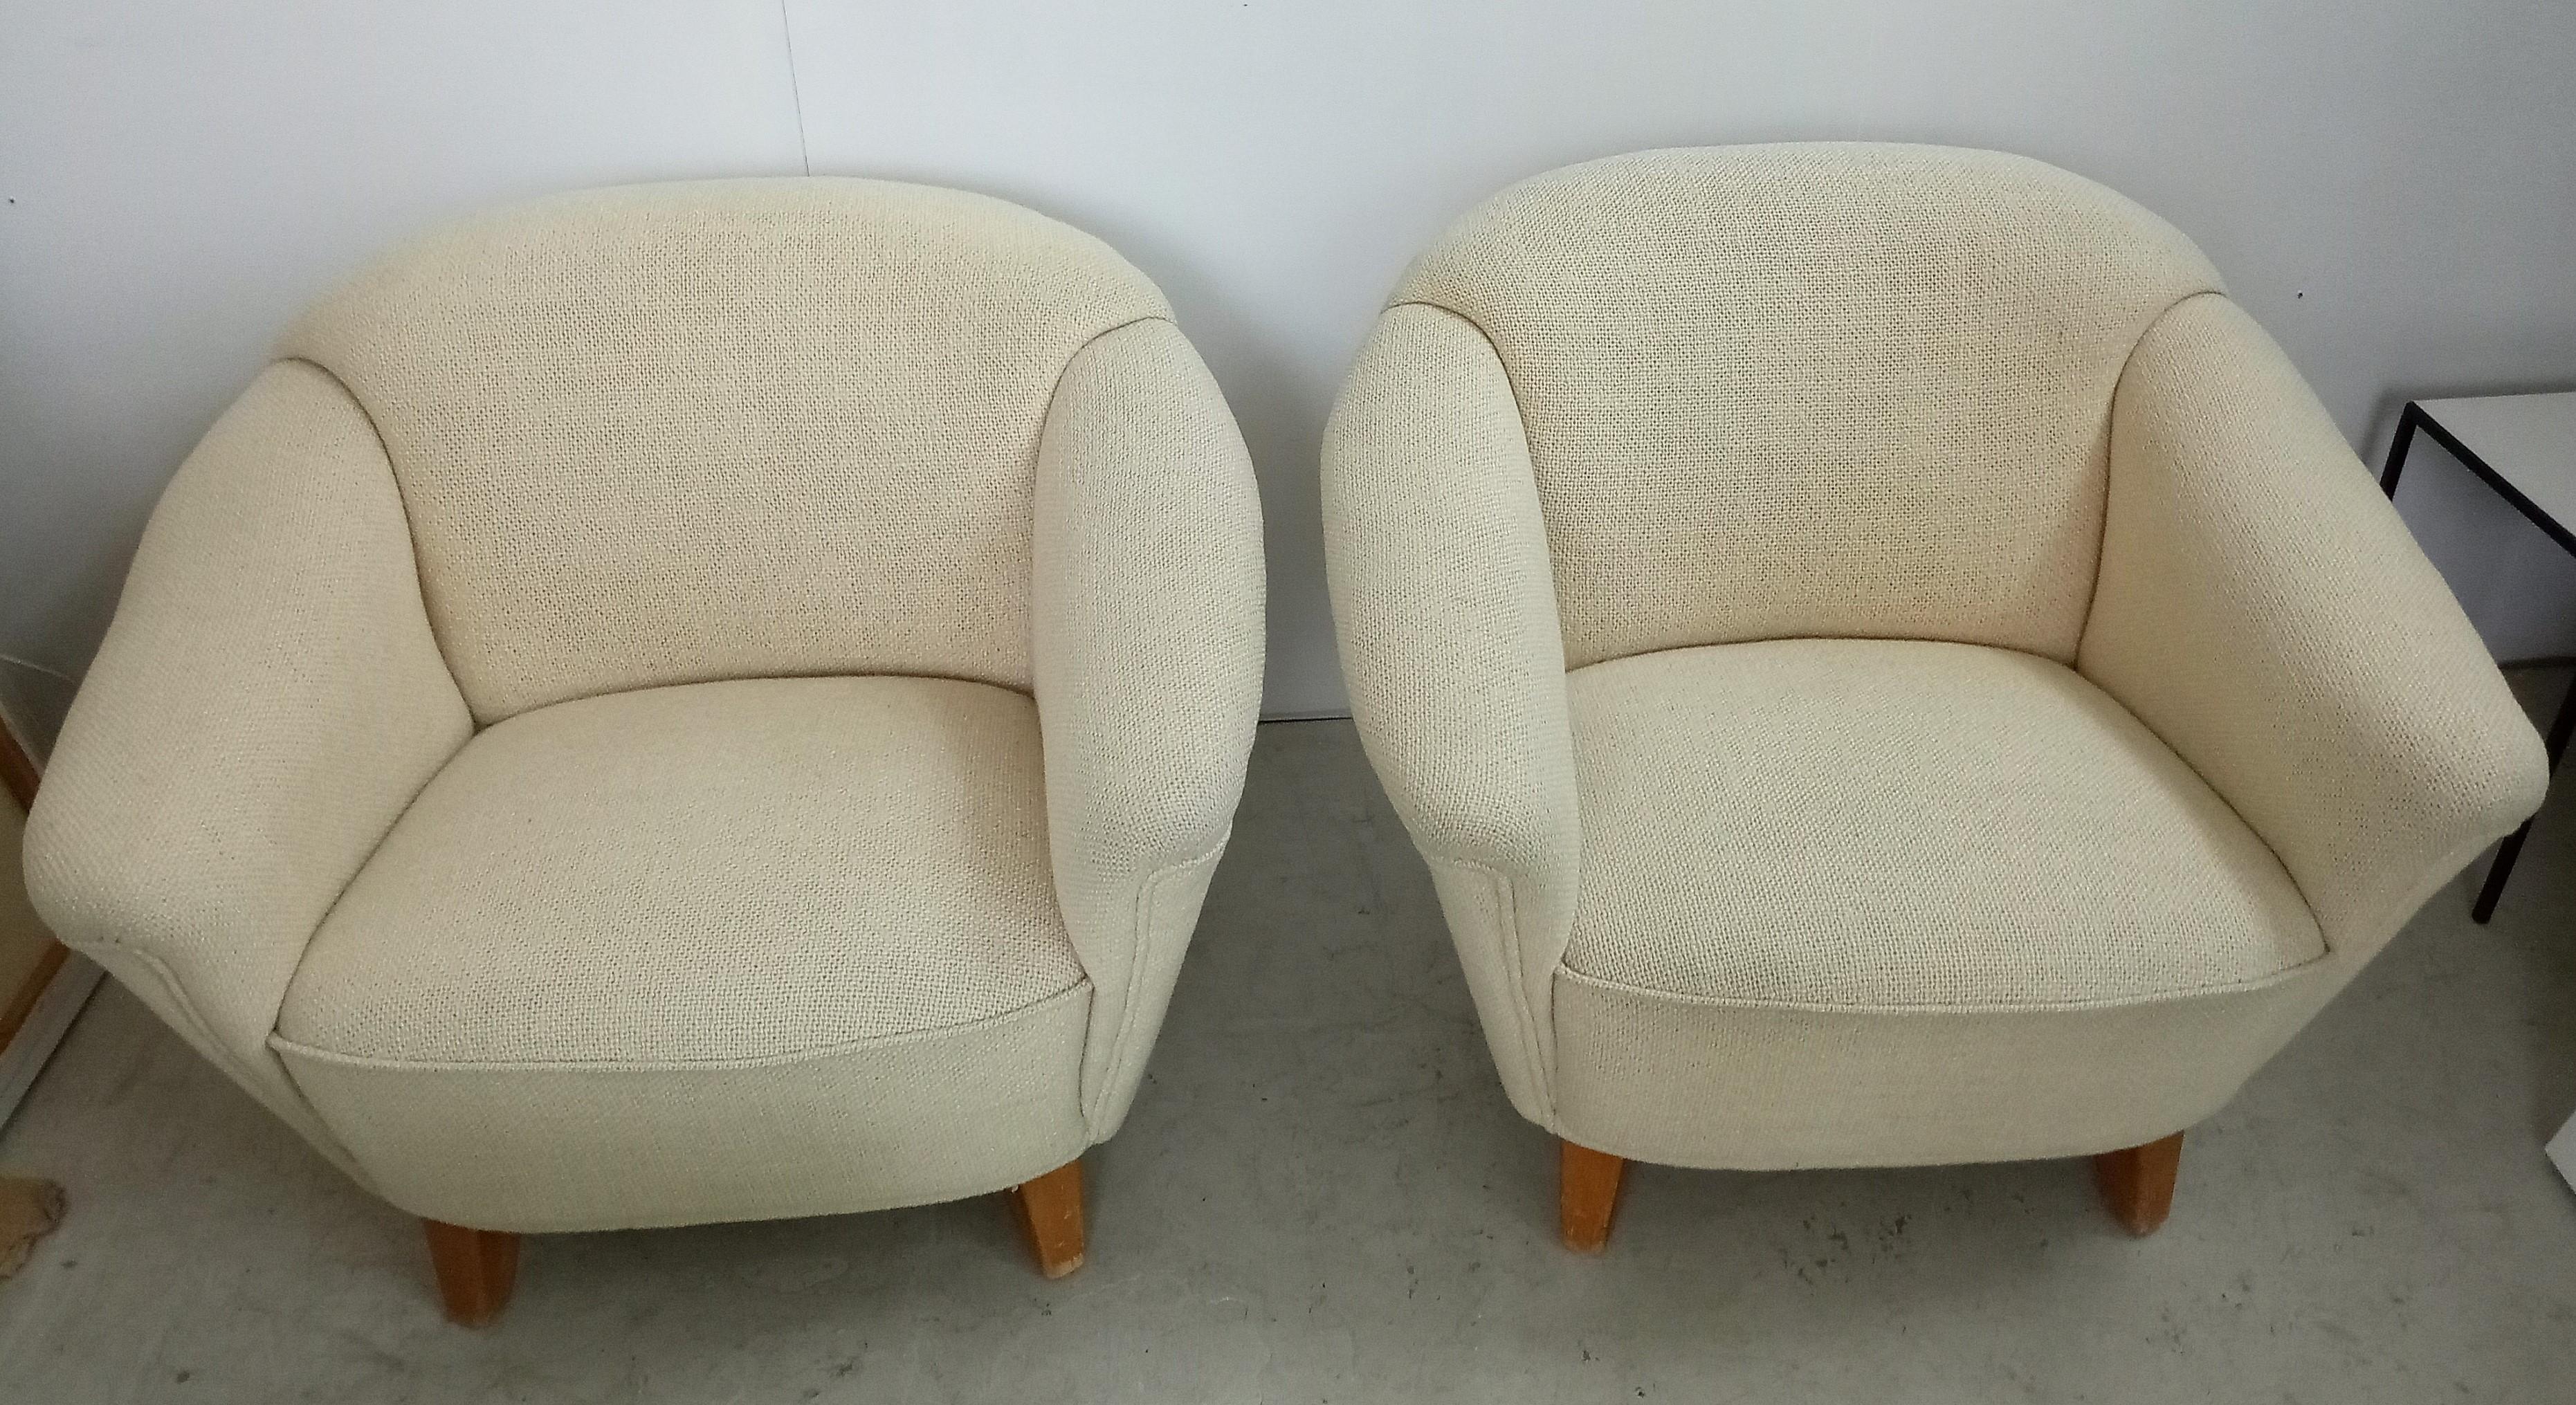 Rare paire de chaises longues du célèbre designer et chef d'entreprise Wilhelm Knoll.
rembourré avec la laine de mouton originale à 100 
très confortable